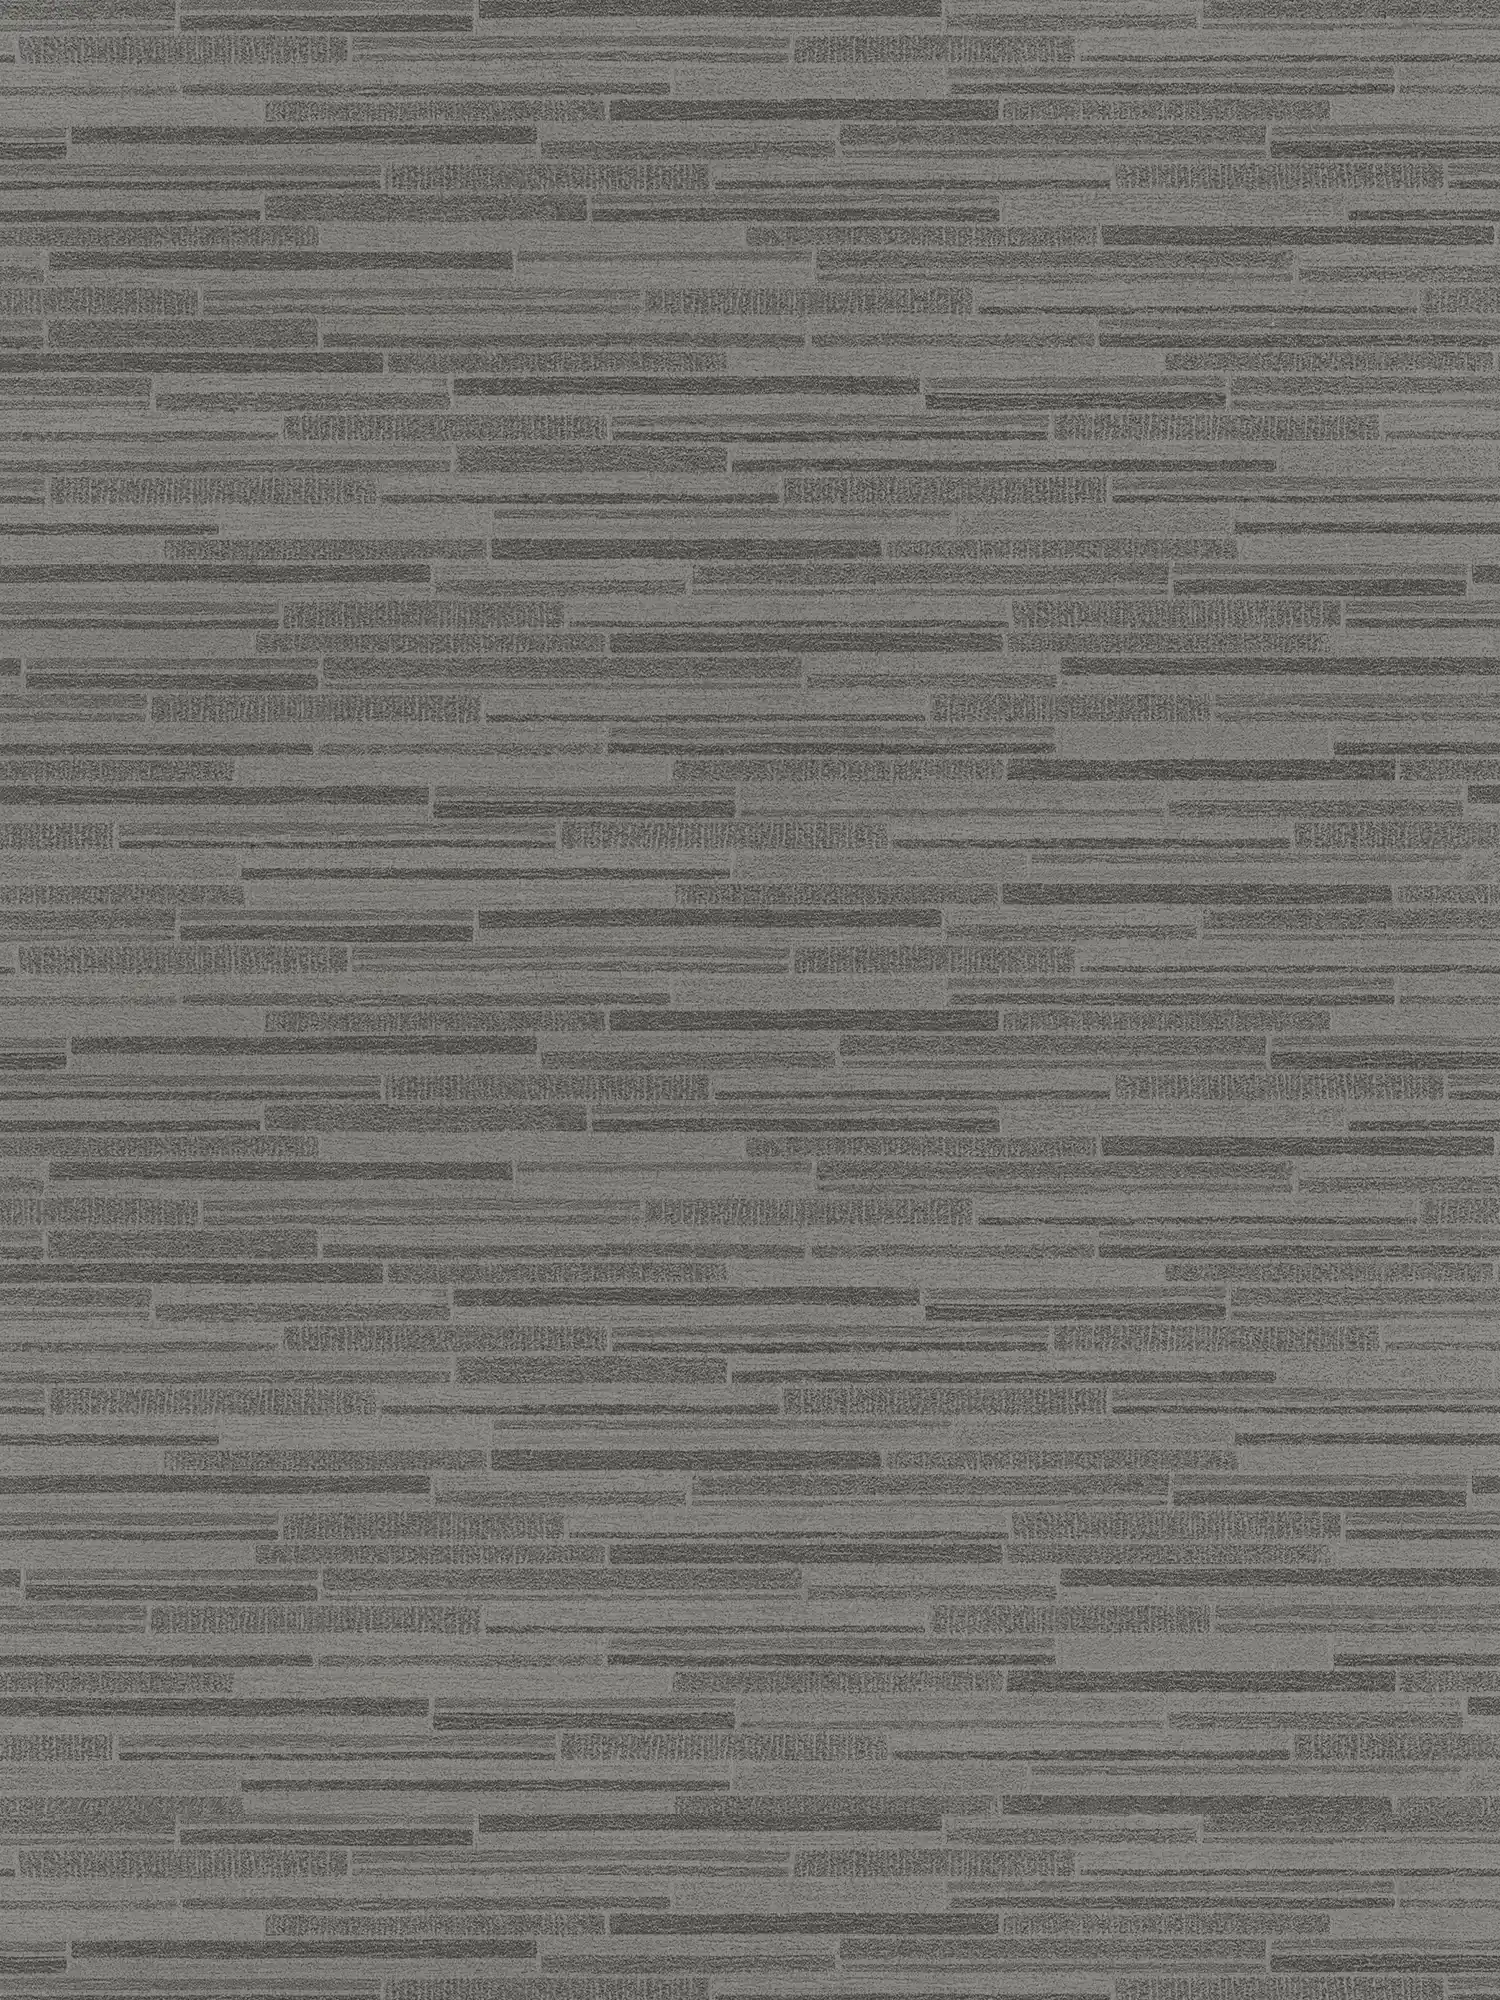 Vliesbehang met lijnmotief, horizontaal gestreept - grijs, zwart
